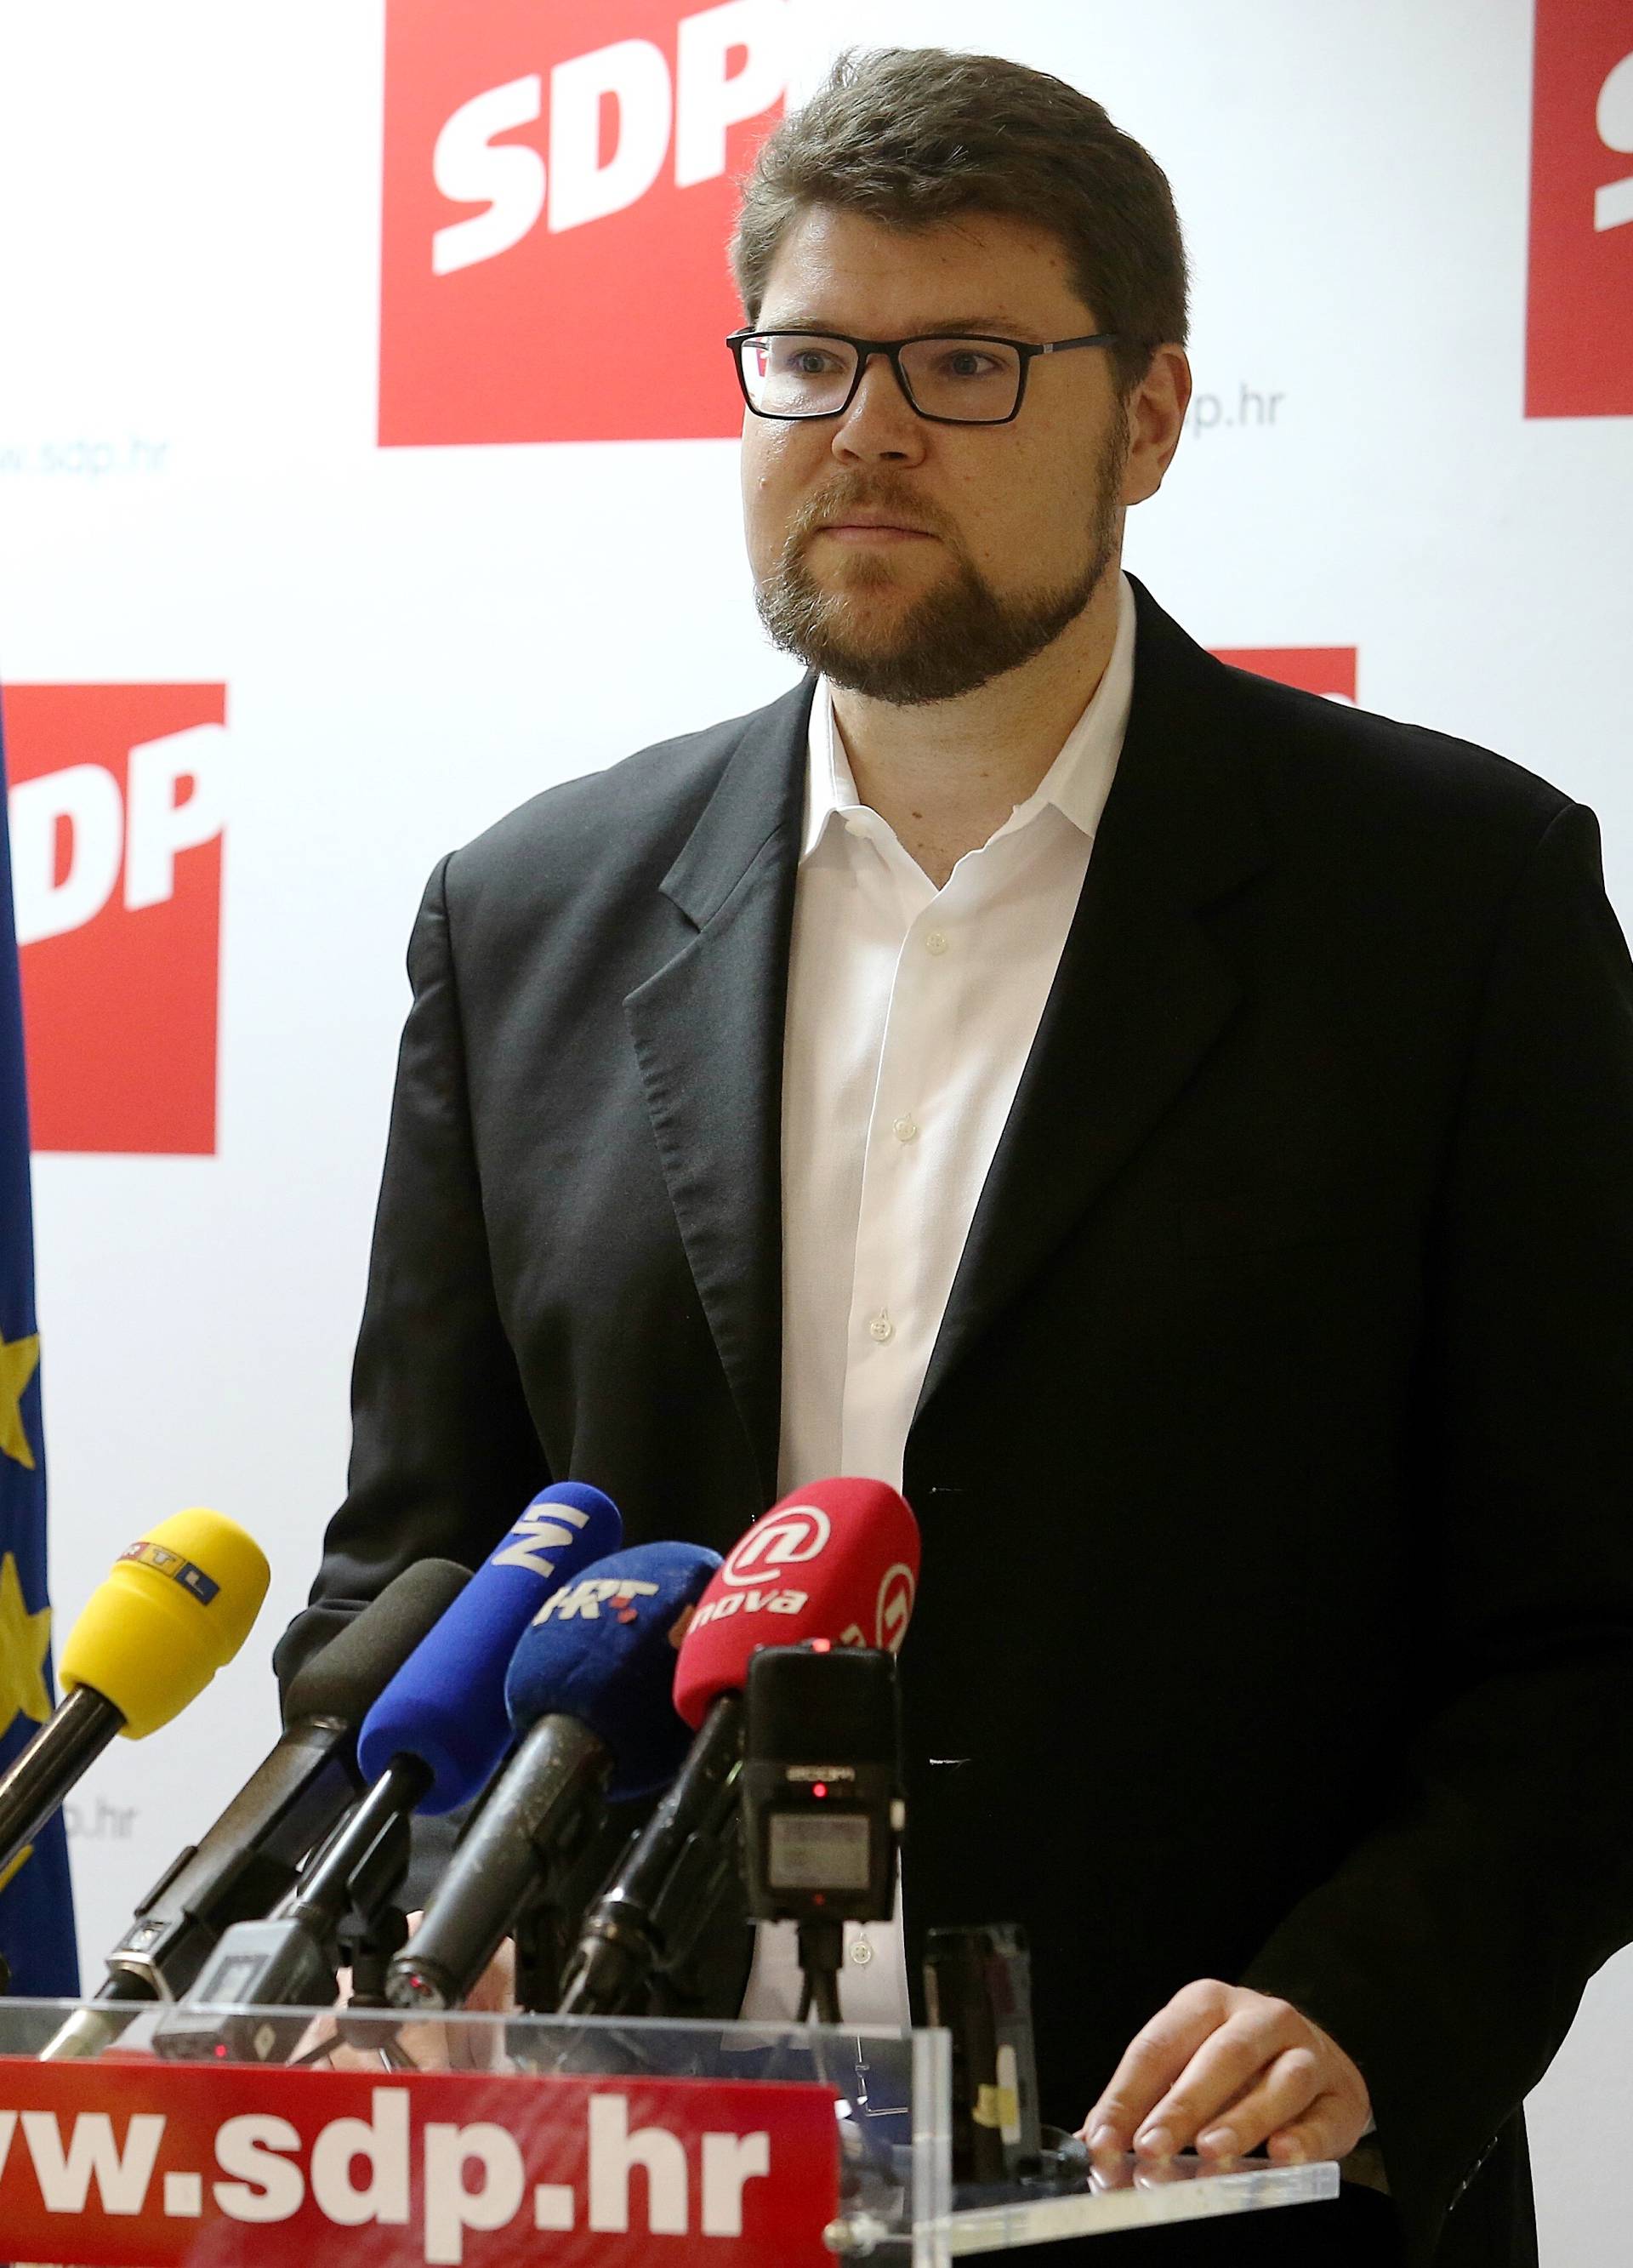 'Neka Kalmeta kaže koji su to SDP-ovi kandidati optuženi'